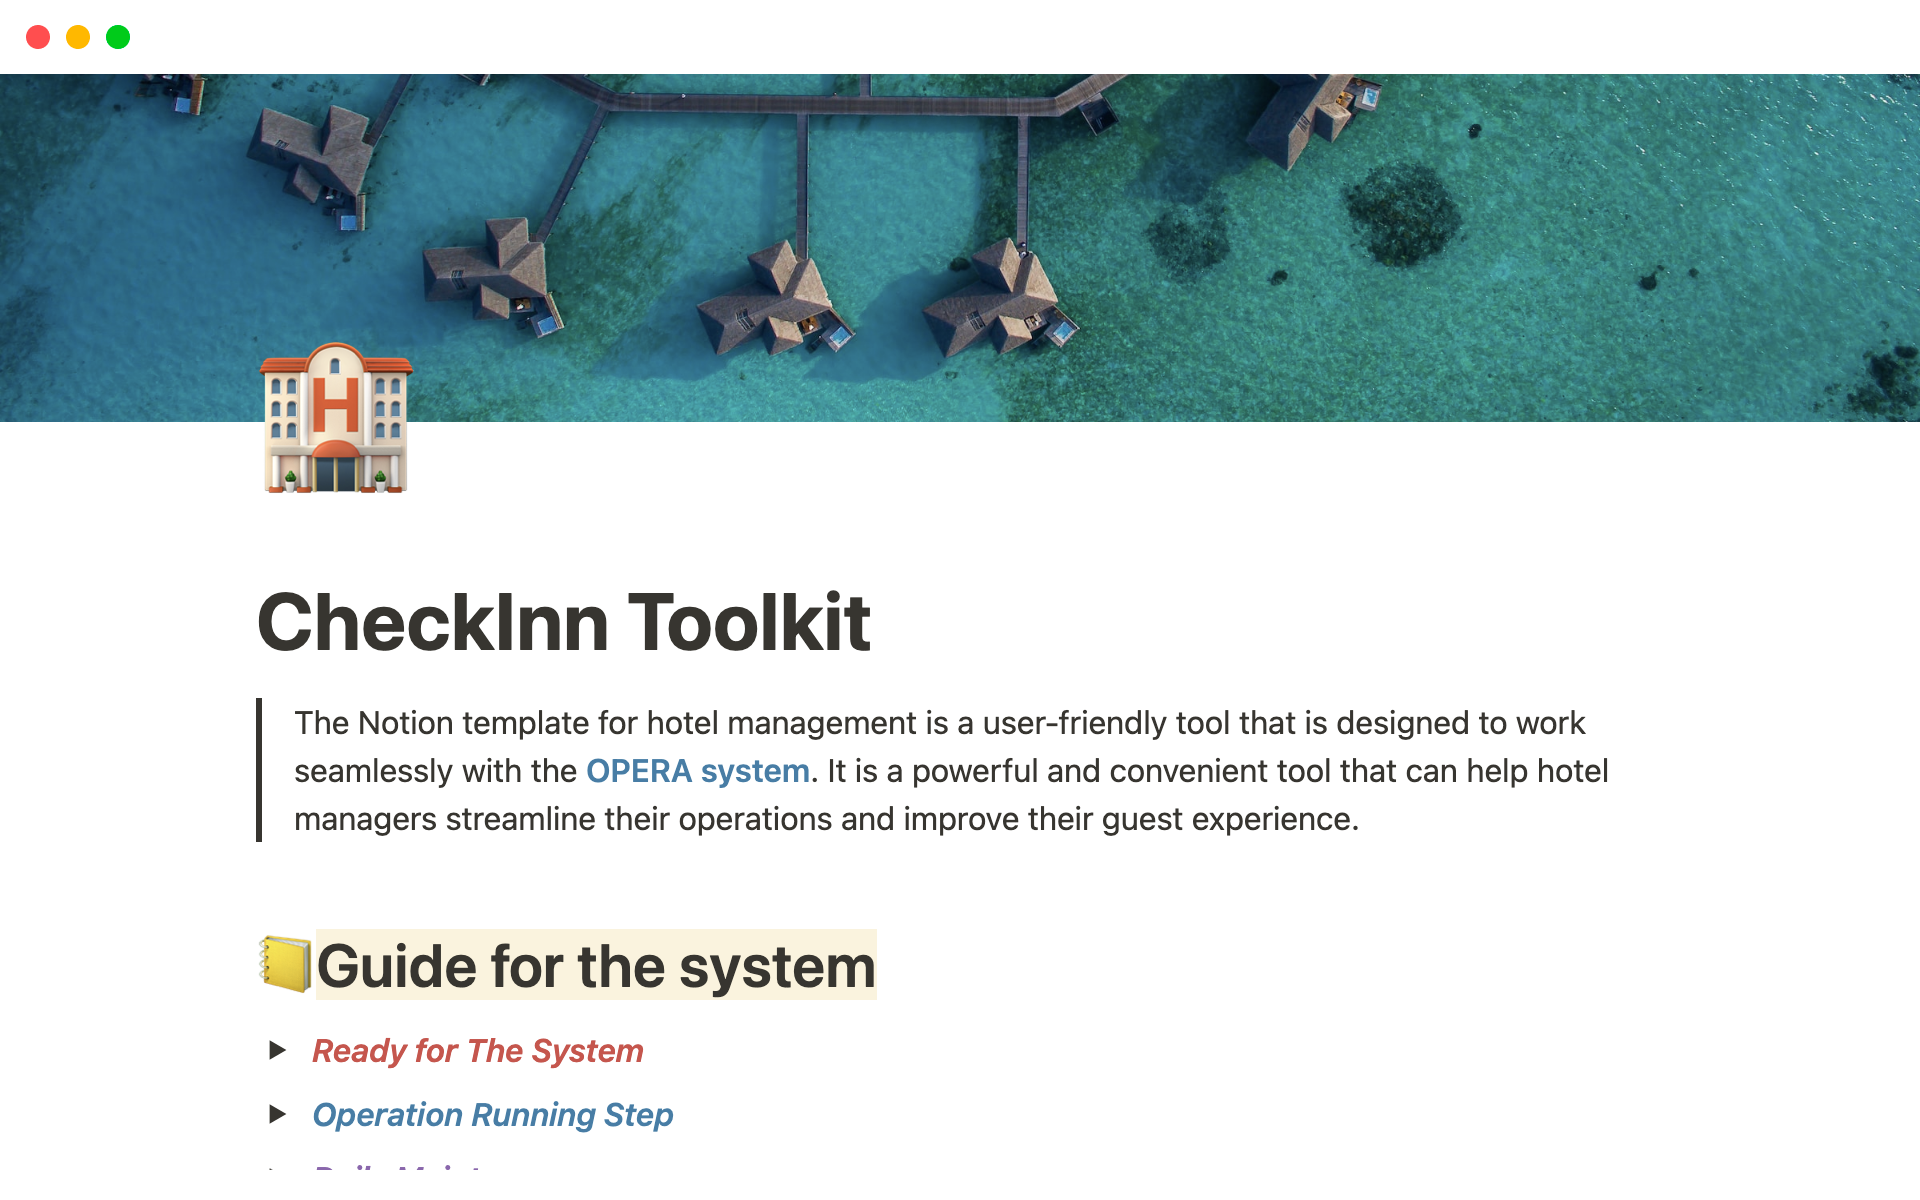 Vista previa de plantilla para CheckInn Toolkit